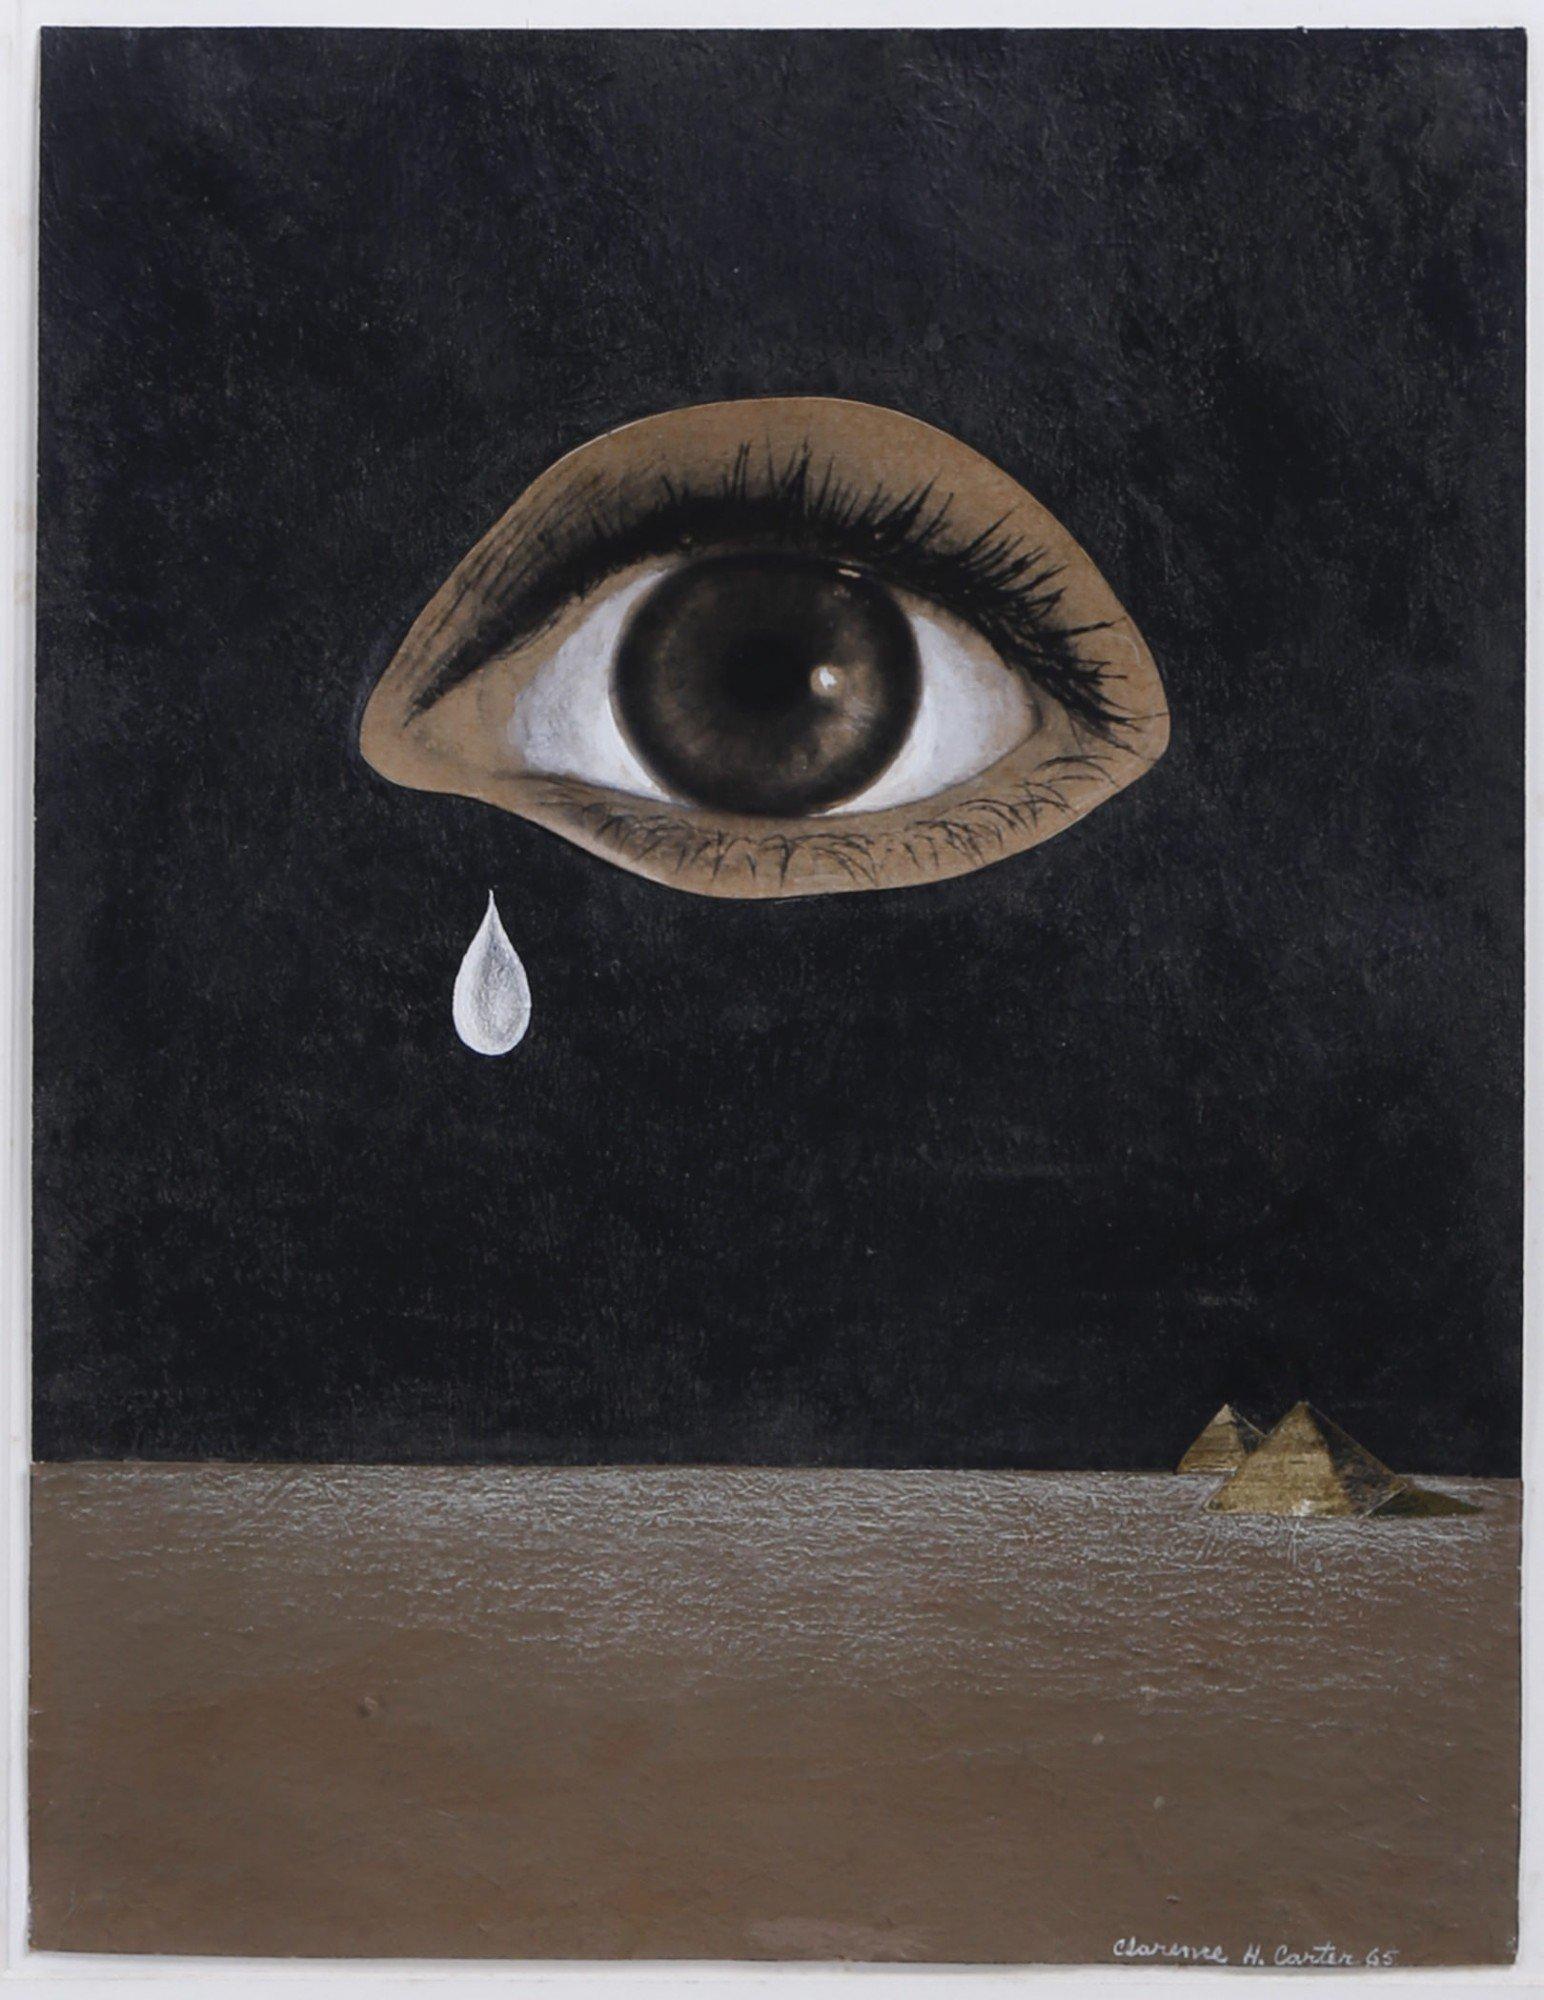 Das Auge der Wste, figurale abstrakte Collage, surrealistisches Gemlde in Schwarz und Braun